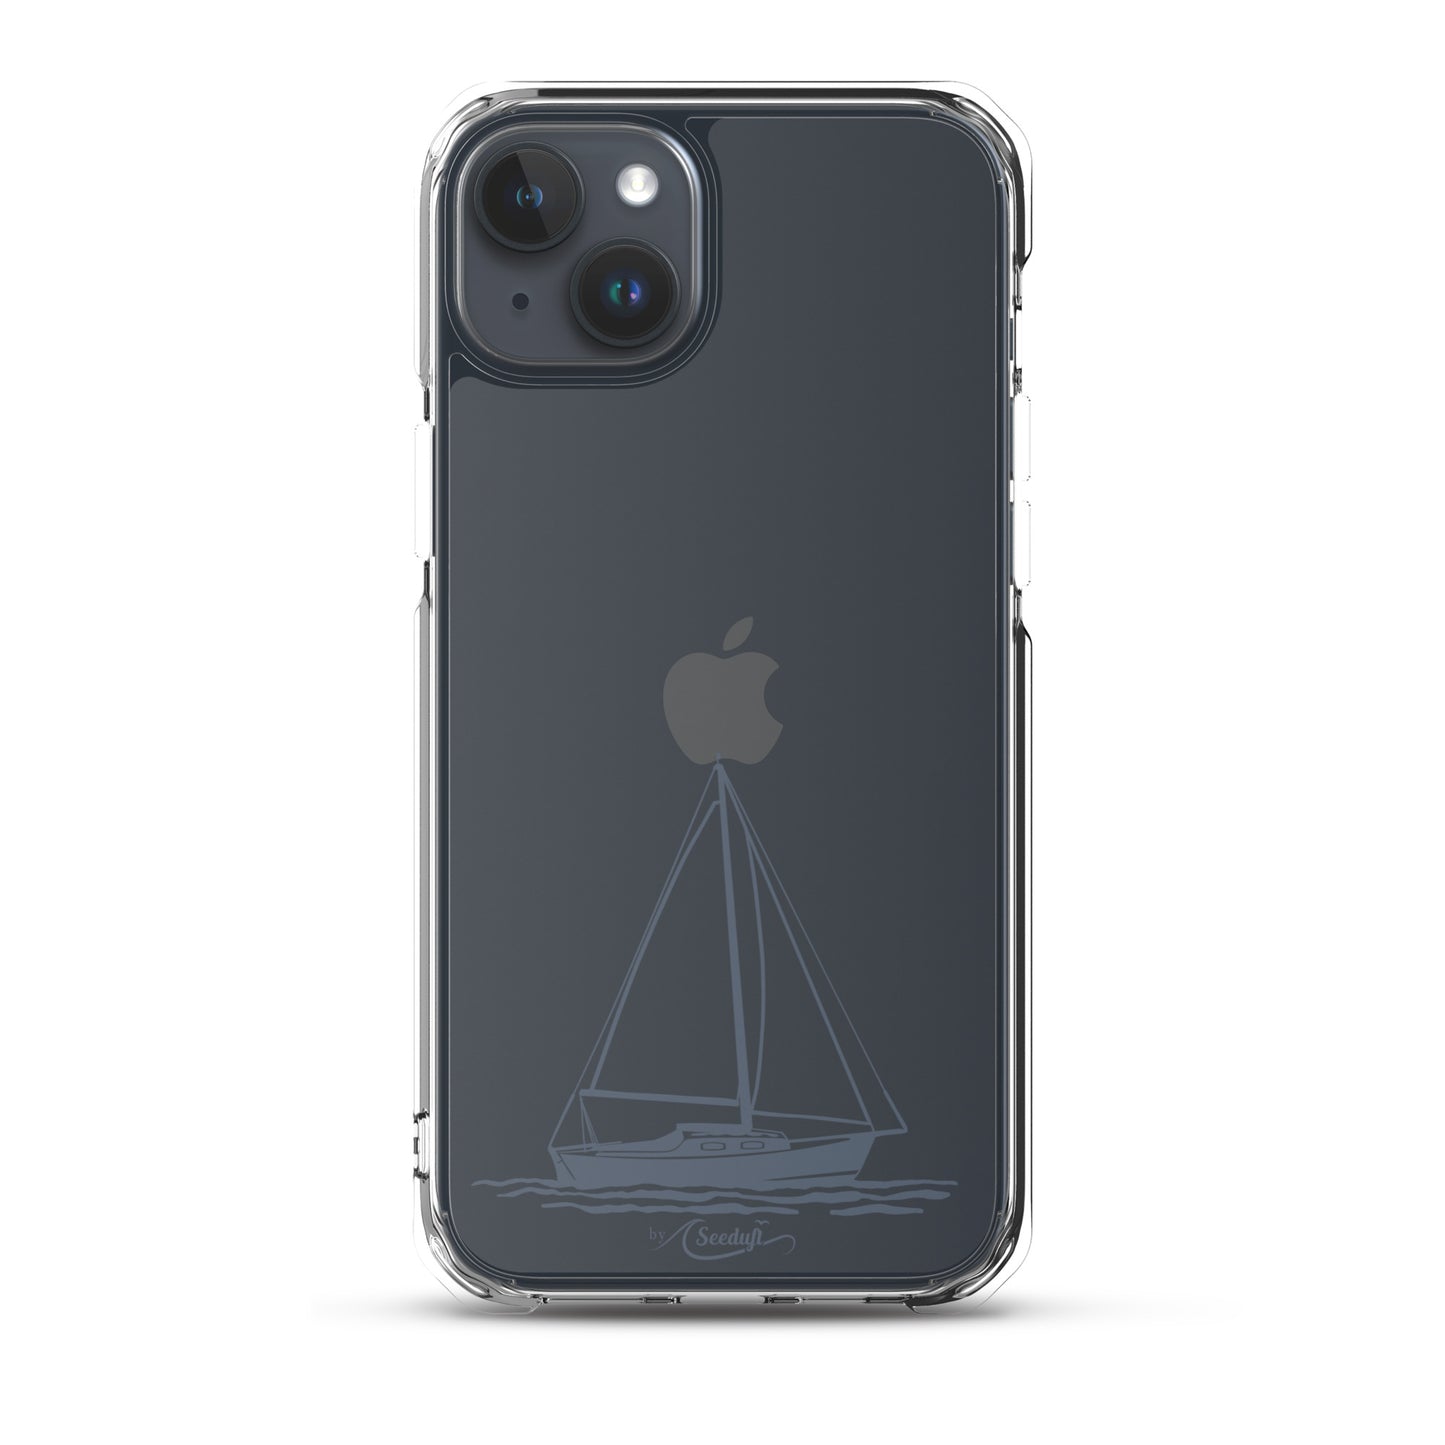 iPhone-Hülle Segelboot im Naturdesign für helle Handys